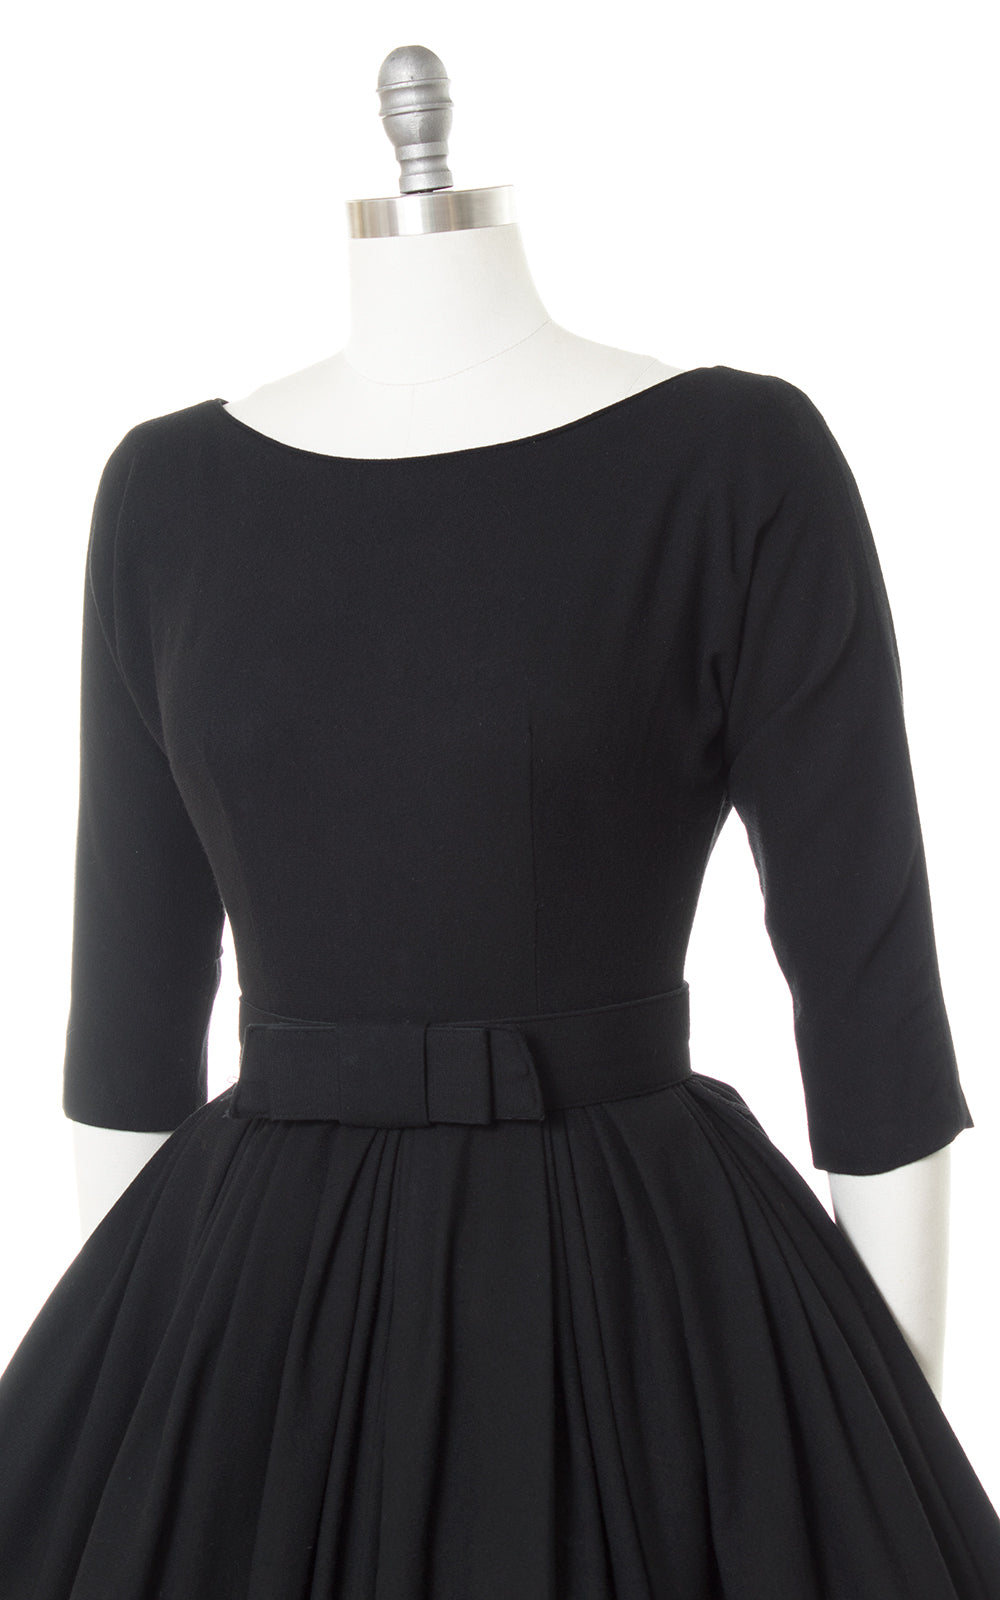 1950s Black Wool Low-Cut Back Dress